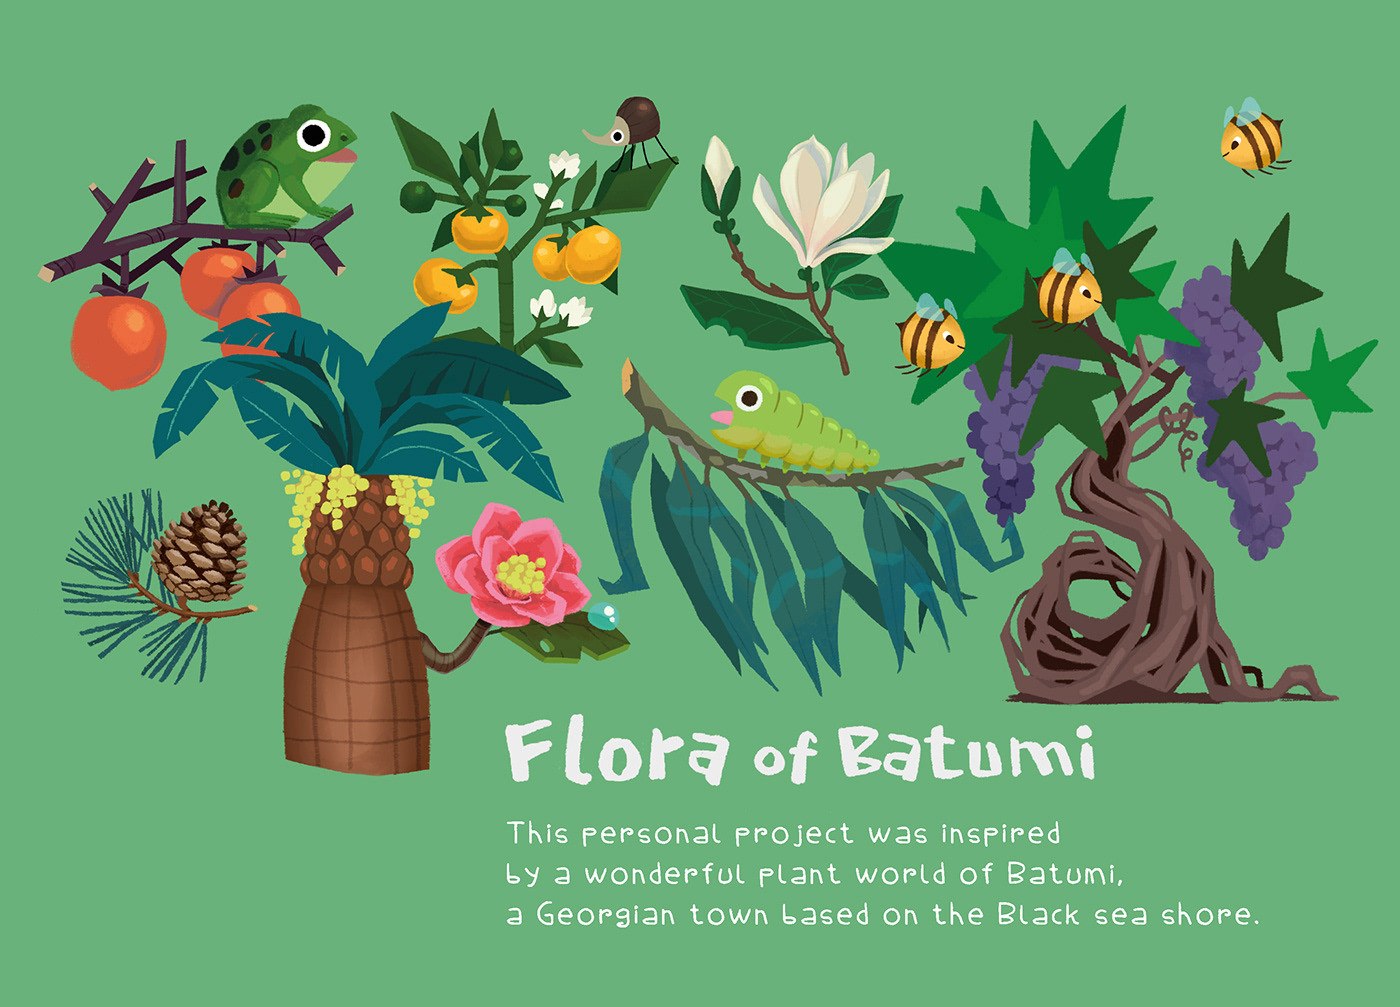 Botanical and plant world illustration